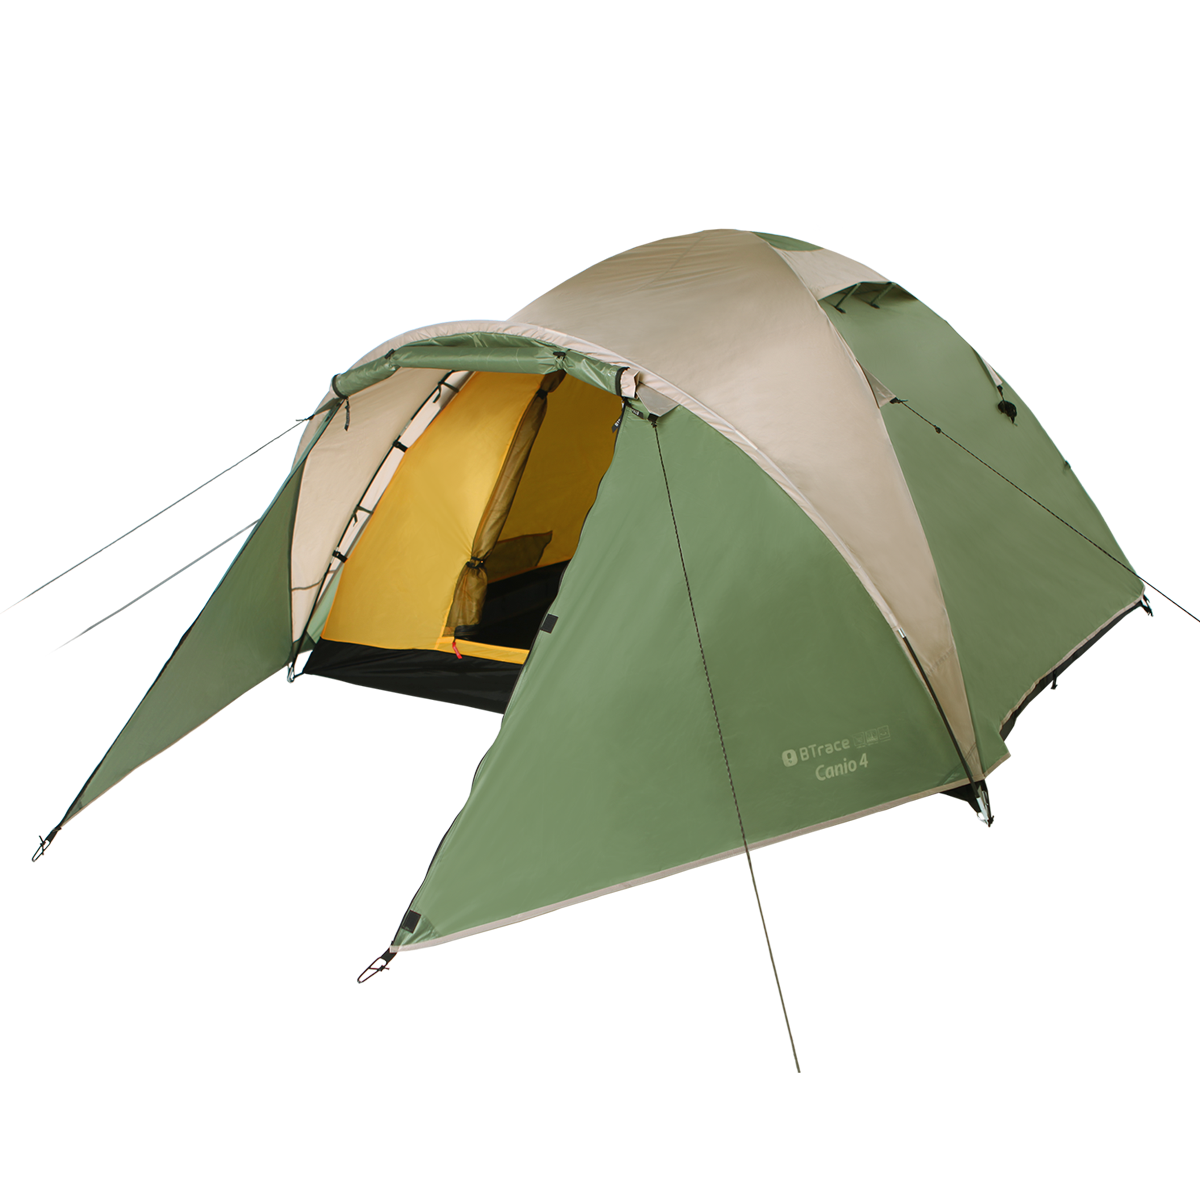 фото Трехместная палатка с увеличенным тамбуром btrace canio 3 (зеленый/бежевый)